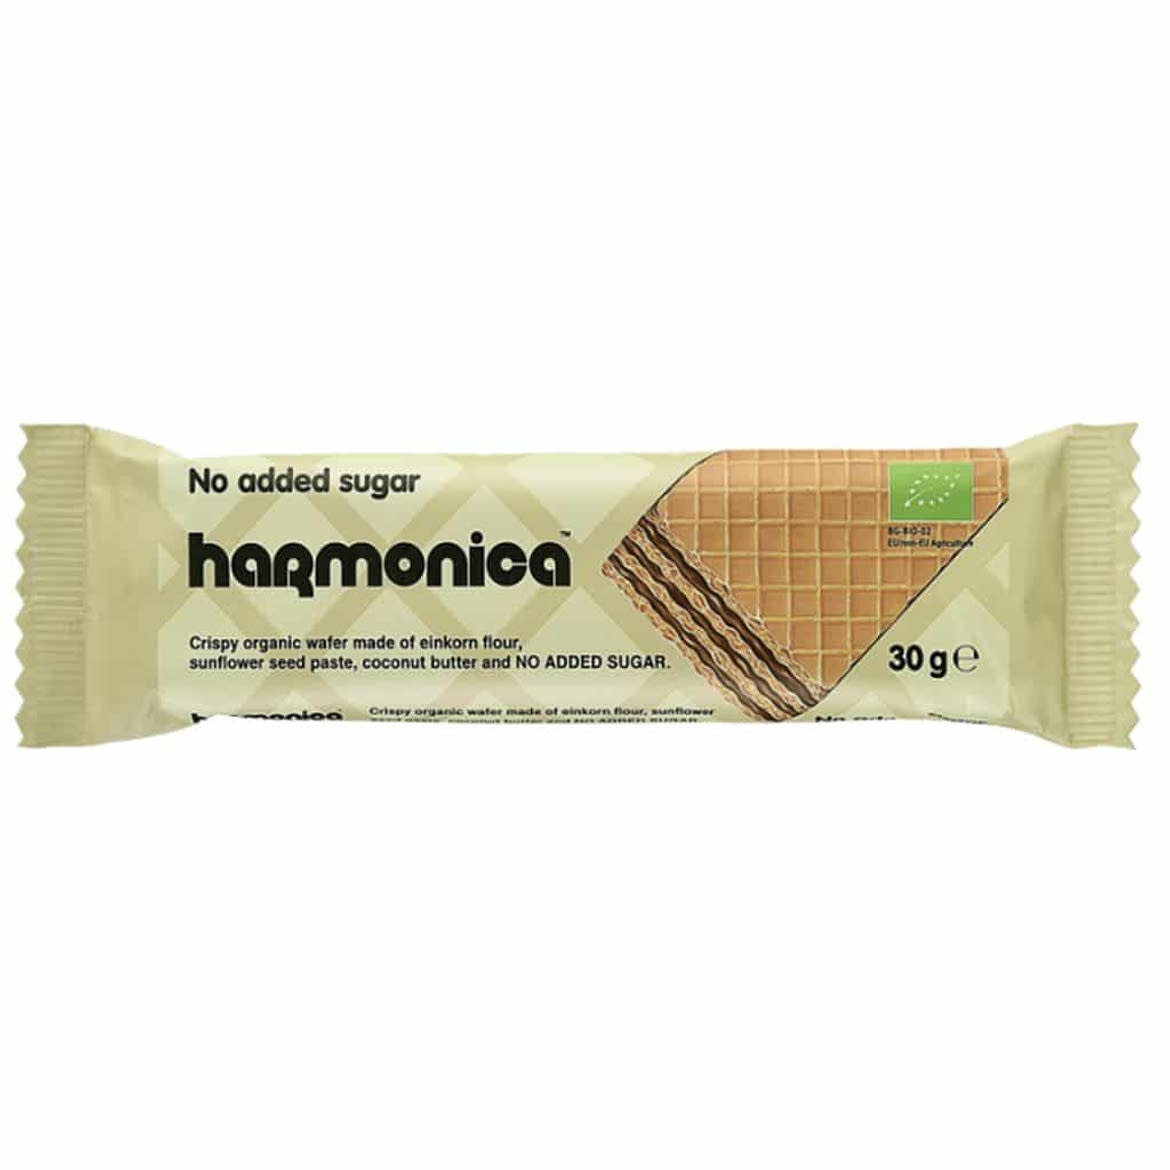 Harmonica BIO Nápolyi alakor ősbúzalisztből hozzáadott cukor nélkül